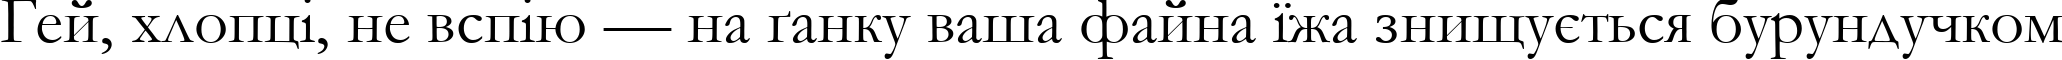 Пример написания шрифтом font252 текста на украинском